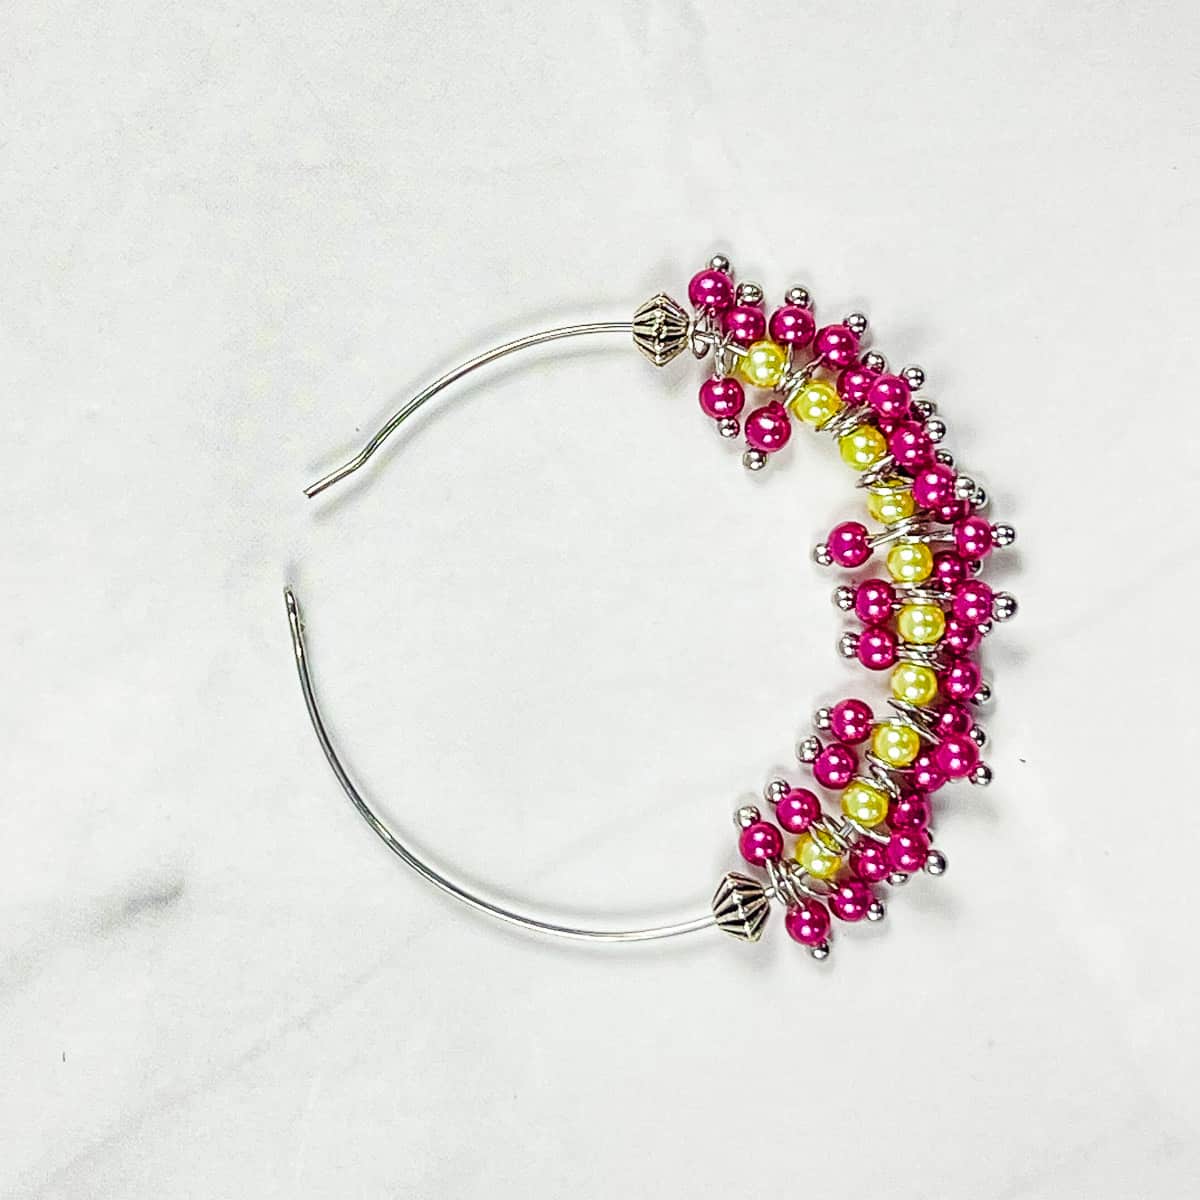 Beads in a hoop for seed bead earrings.